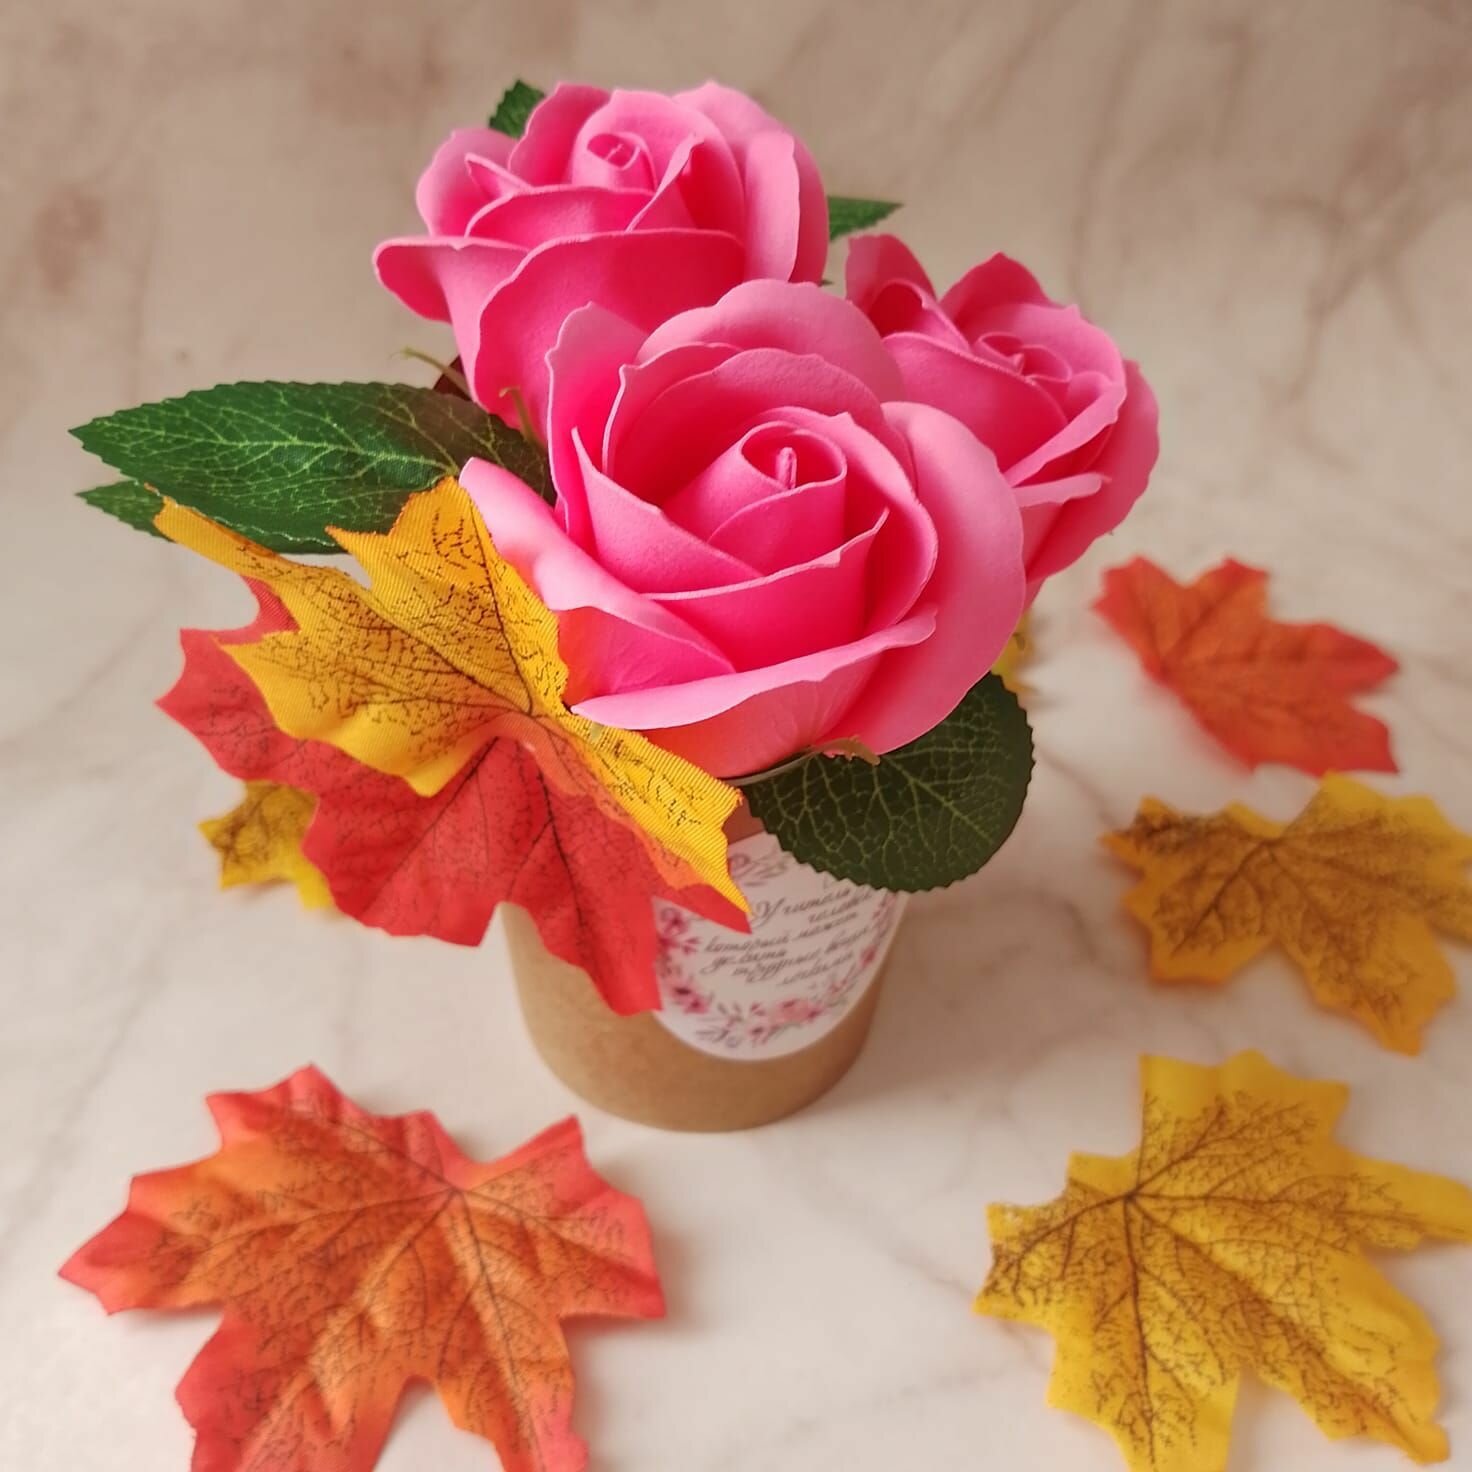 Стаканчик с мыльными розовыми розами "В подарок учителю", ароматная композиция, подарок преподавателю